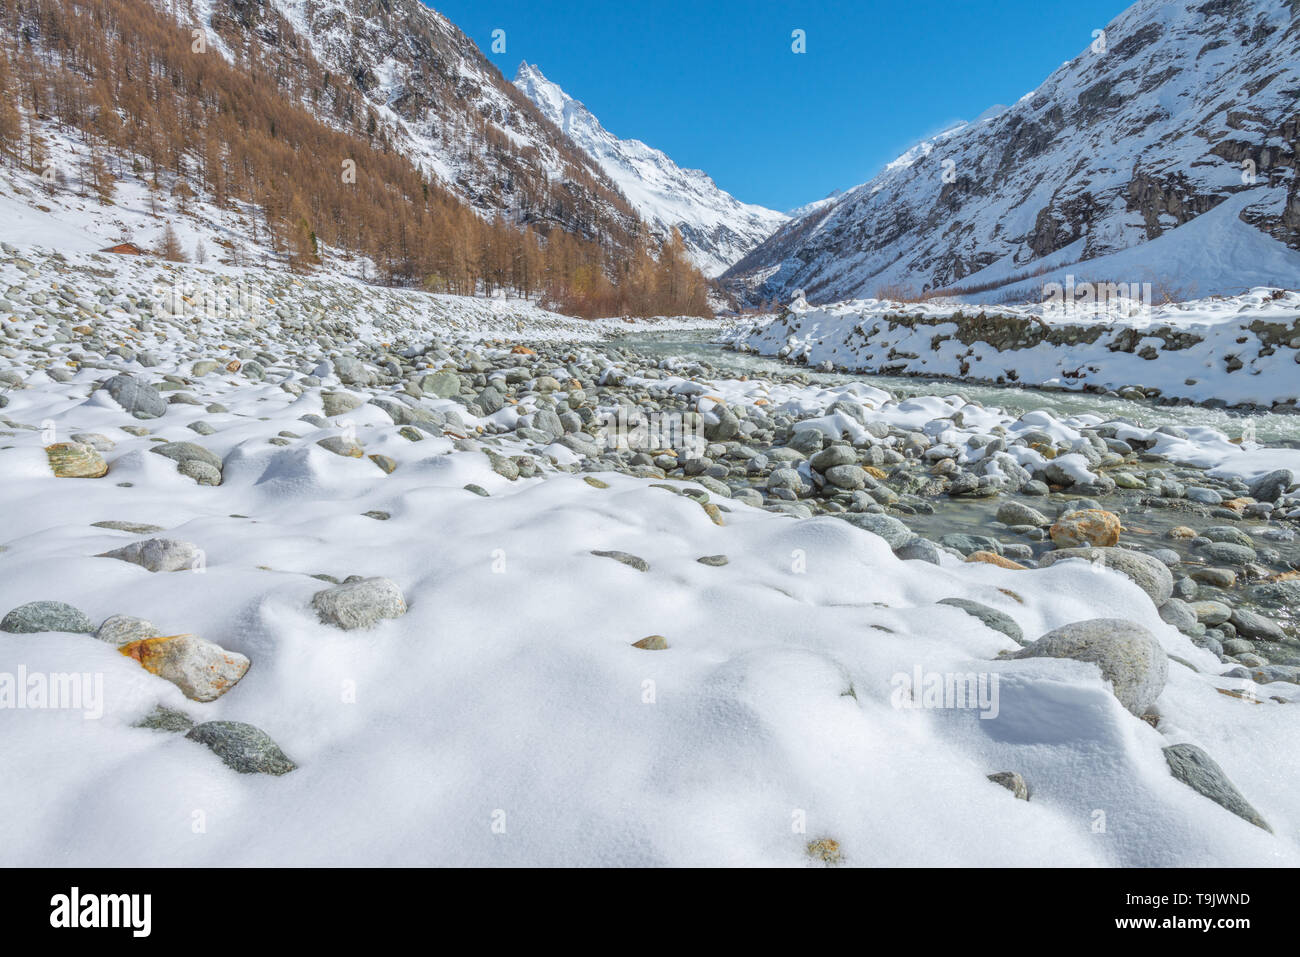 Prominente, nevato torri di picco al di sopra della valle. Alpi svizzere. Coperte di neve valle glaciale di fiume alimentato, neve fresca sul letto del fiume rocce. Foto Stock